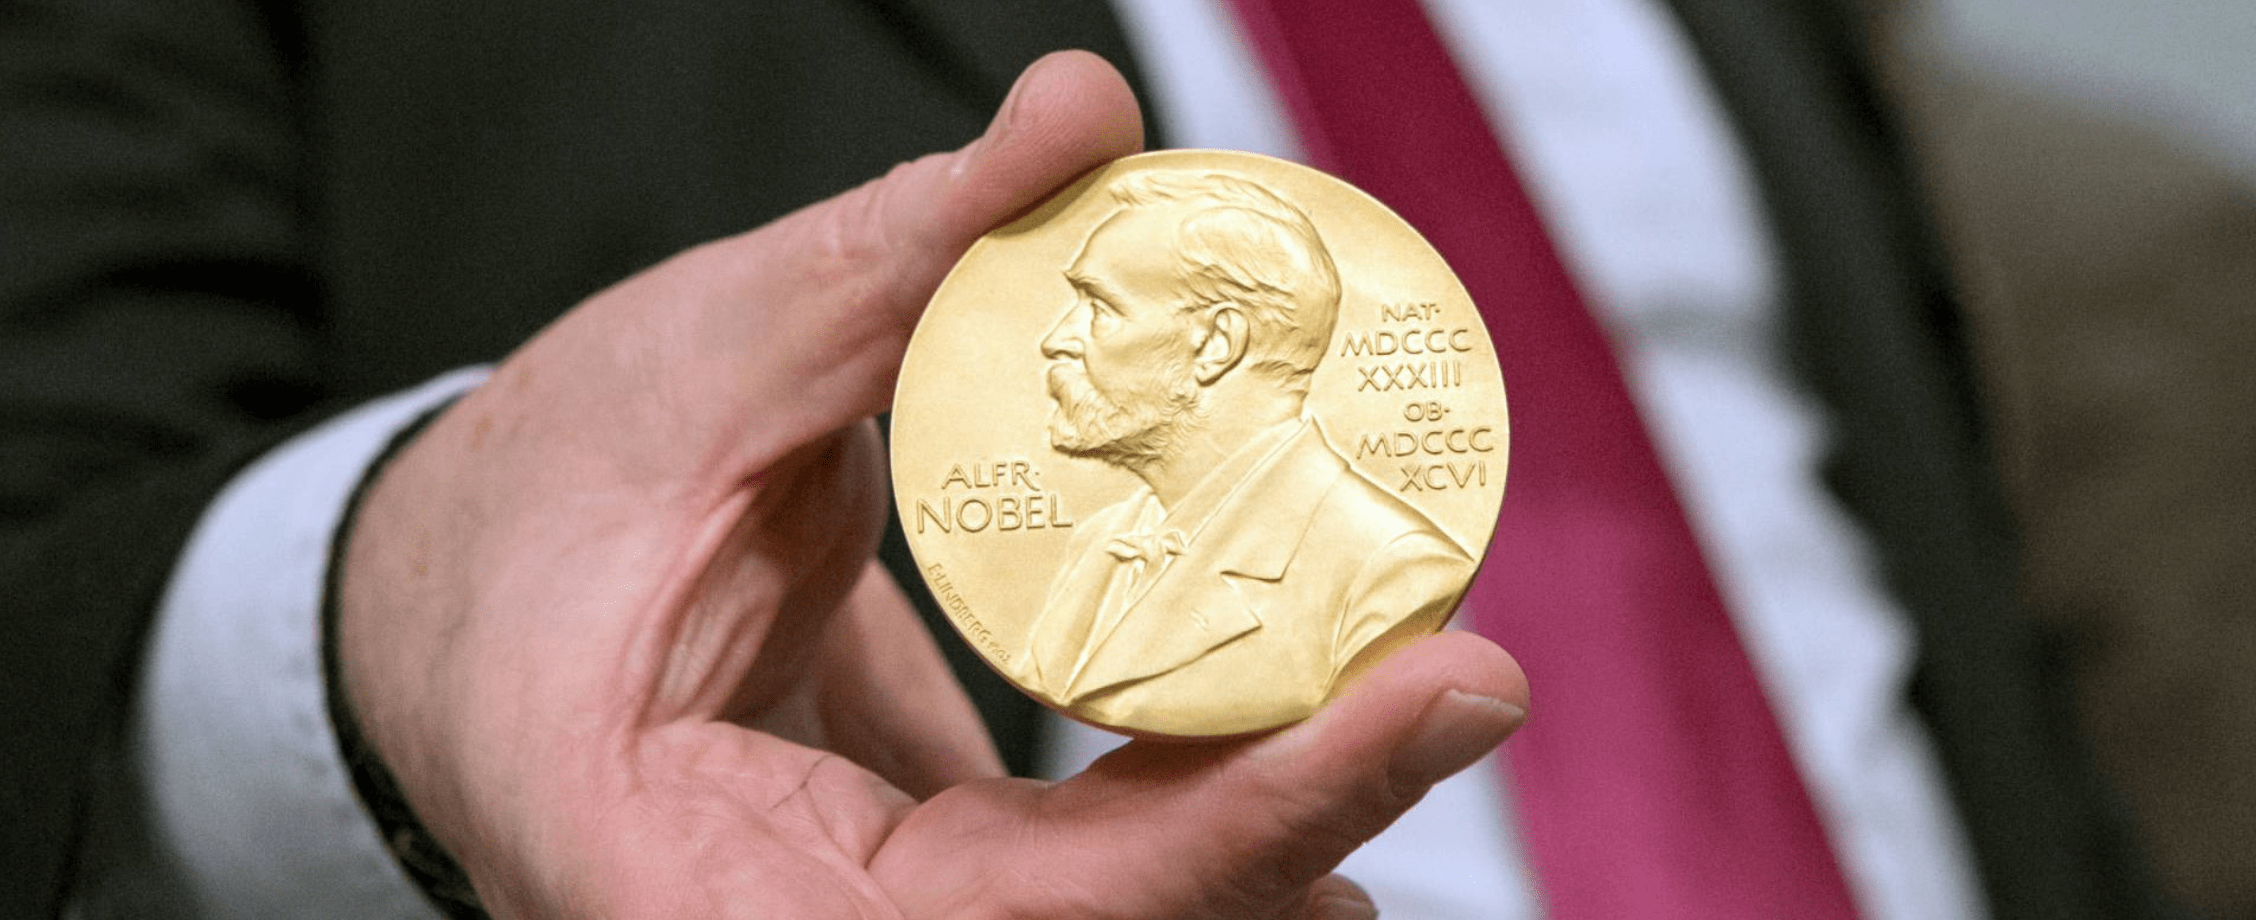 Нобелевку — Нобелю! Как шведская премия стала успешным инвестиционным проектом